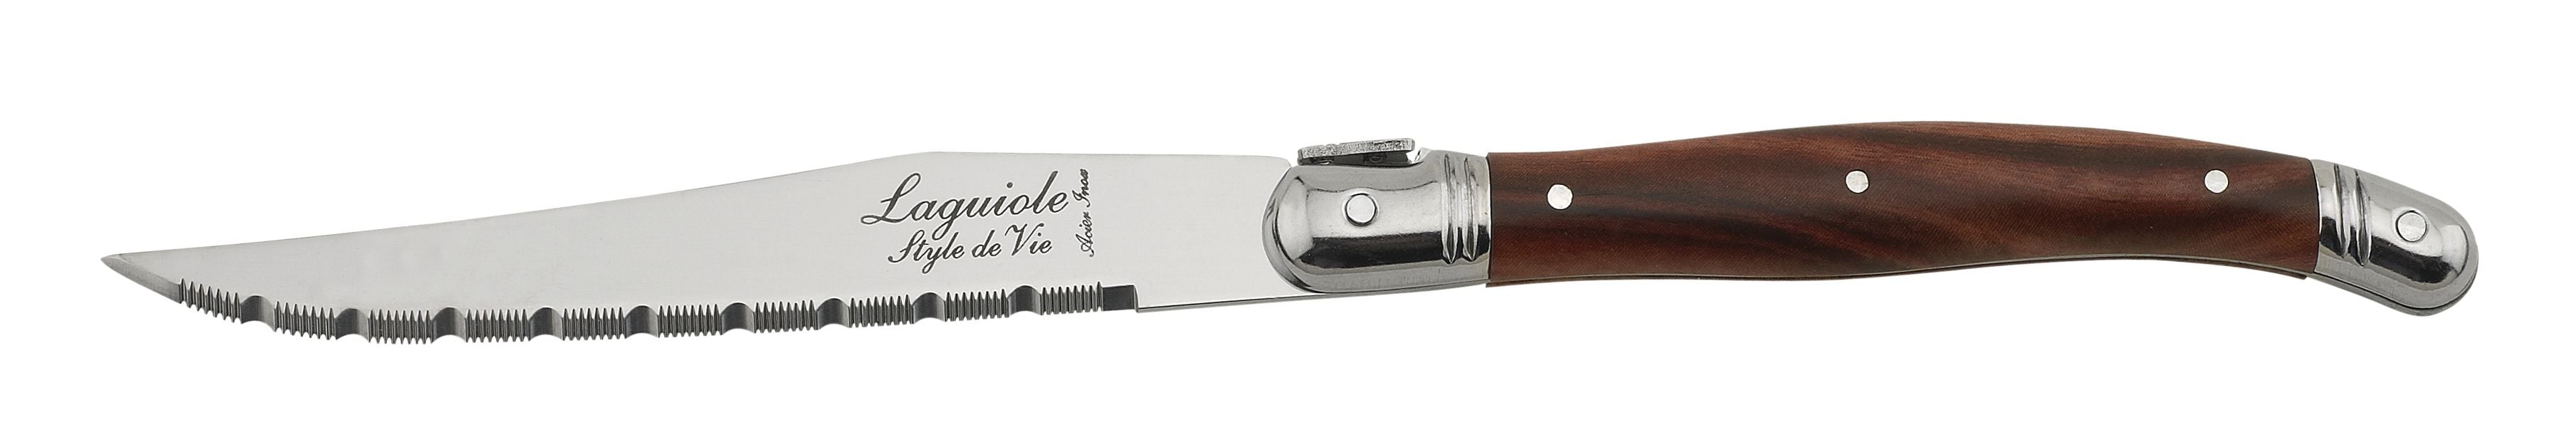 Style De Vie Authentique Laguiole Premium Line Steak Knives 6 Piece Set, Dark Wood